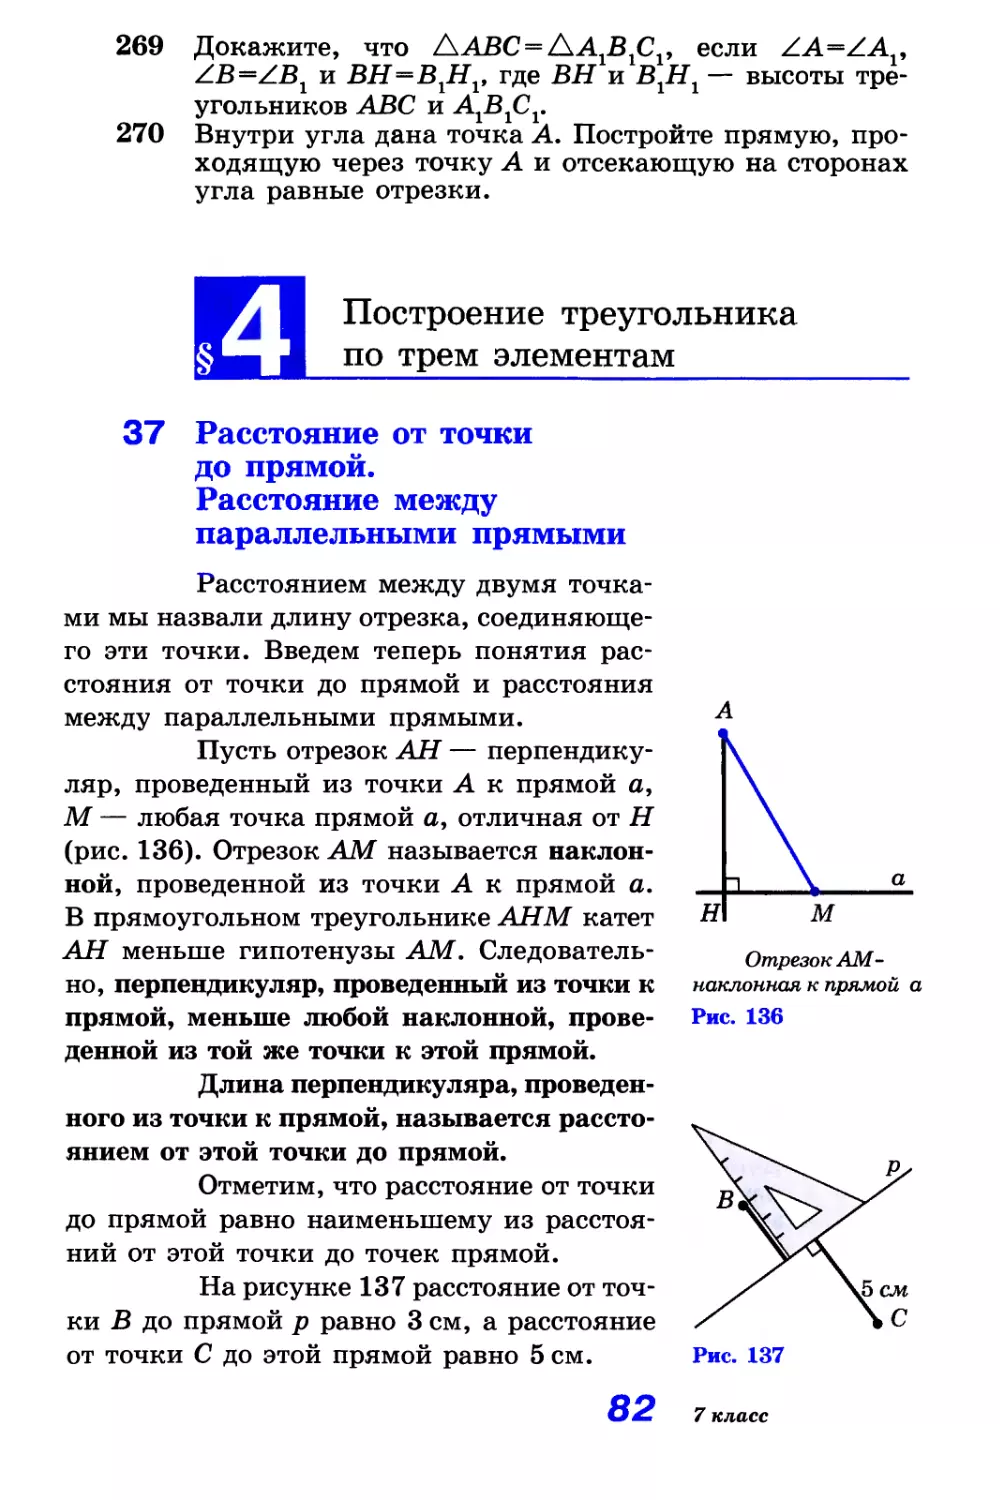 § 4. Построение треугольника по трем элементам